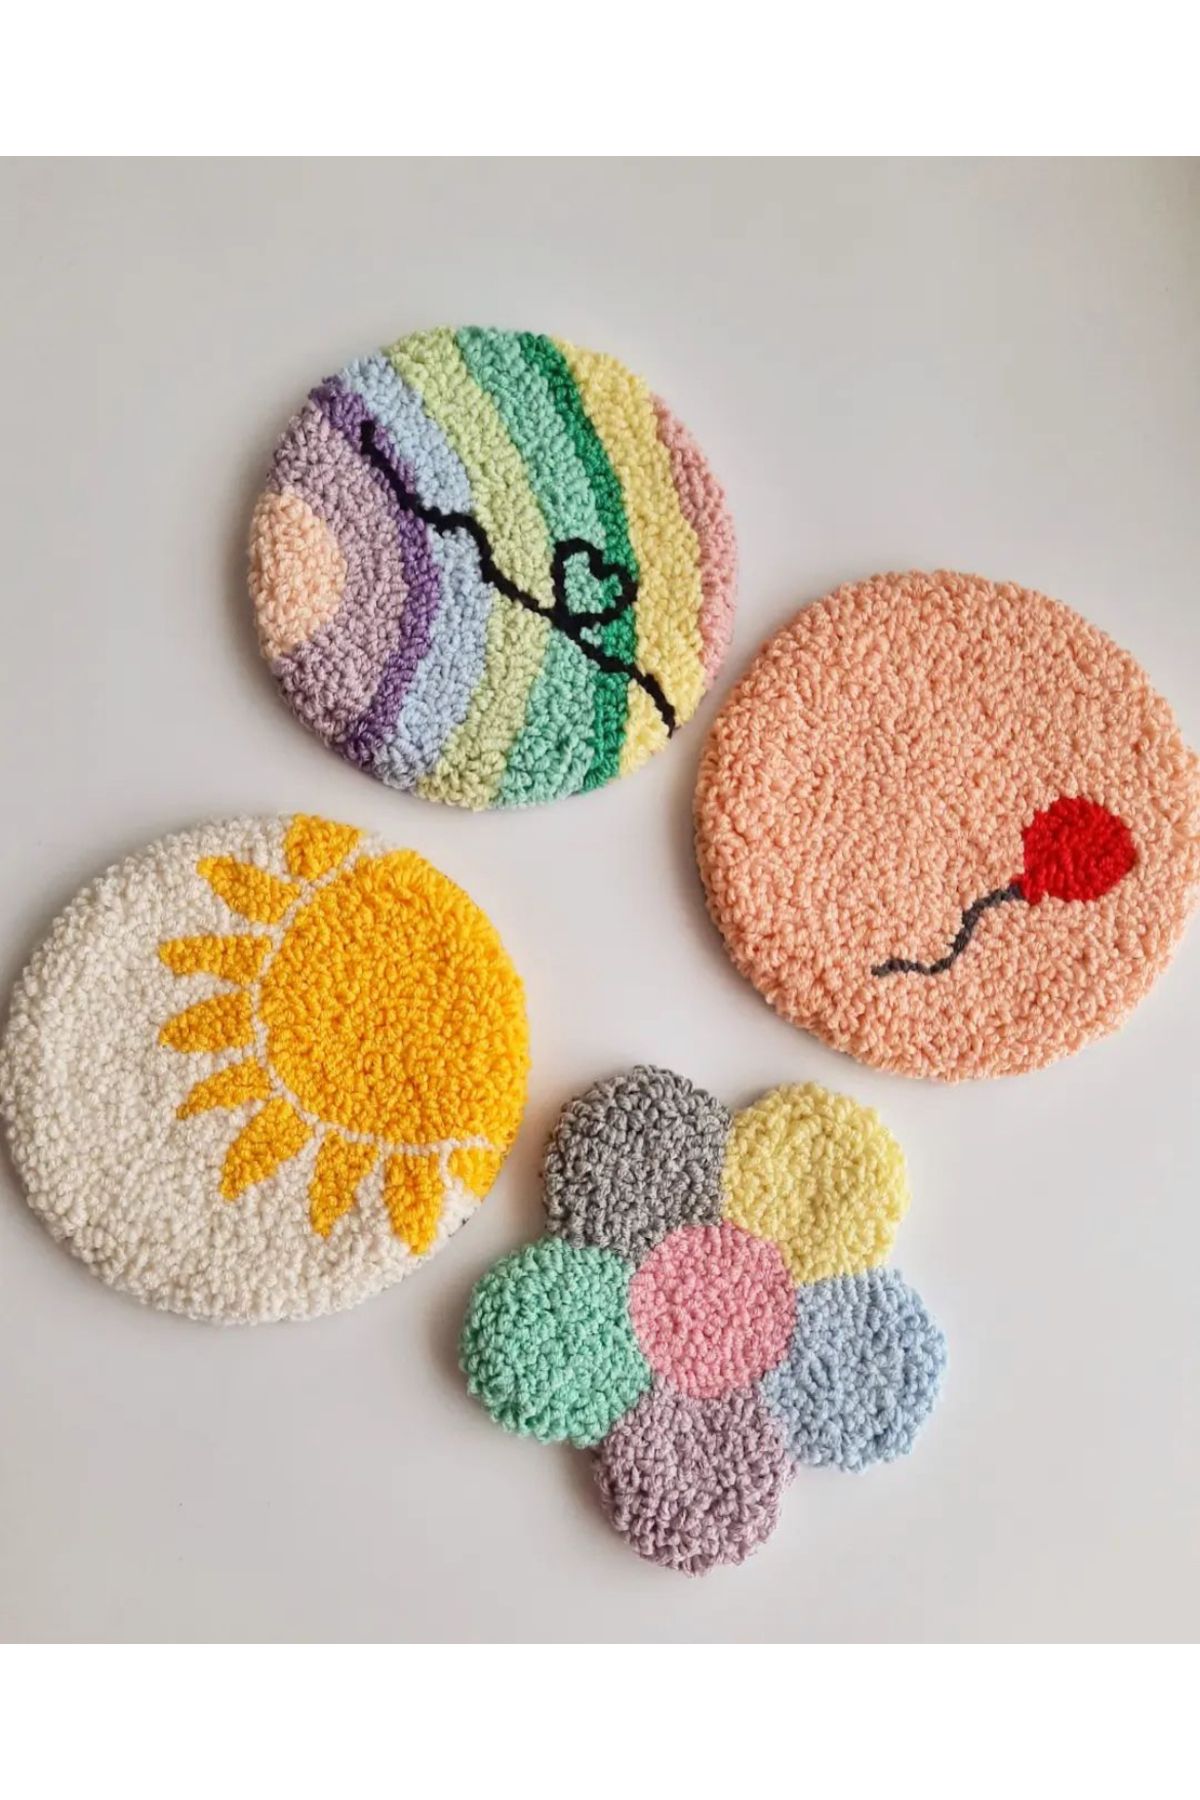 Sima El Yapımı 4 Lü Punch Needle Çiçek Güneş Balon Kalp Mozaik Desenli Mug Rug Bardak Kahve Sunum Altlığı